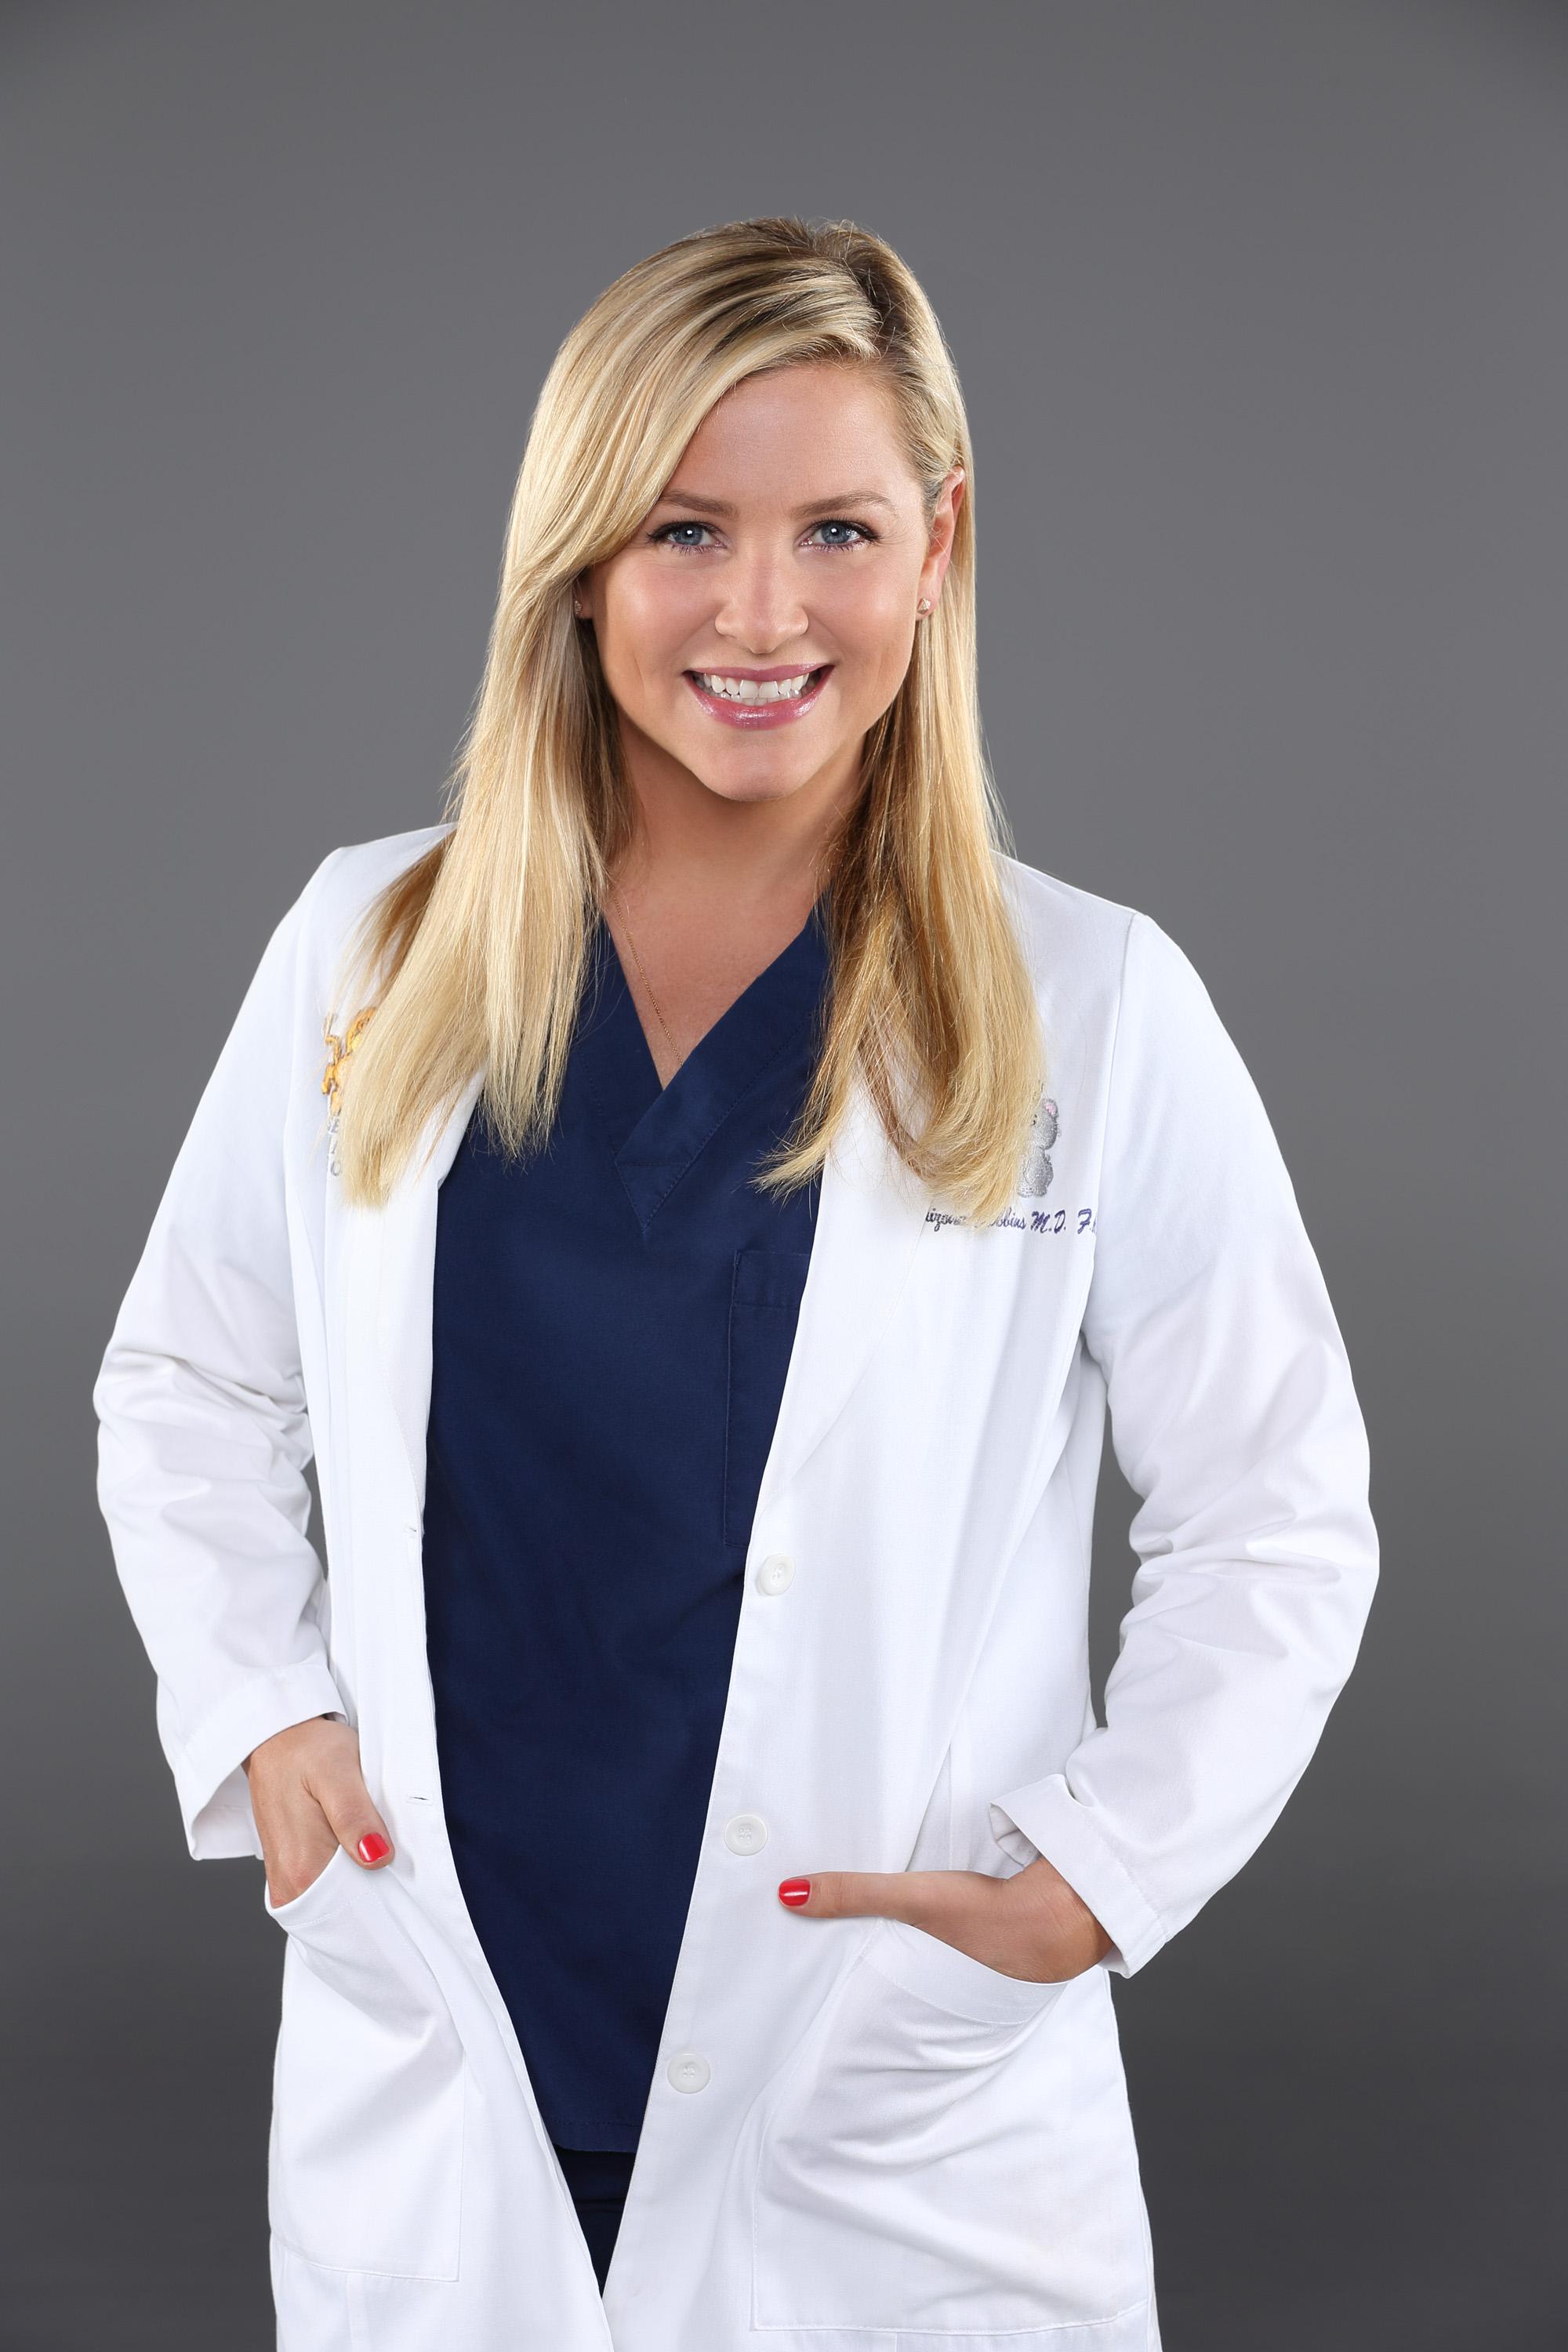 Greys Anatomy S10 Jessica Capshaw 3 Dvdbash